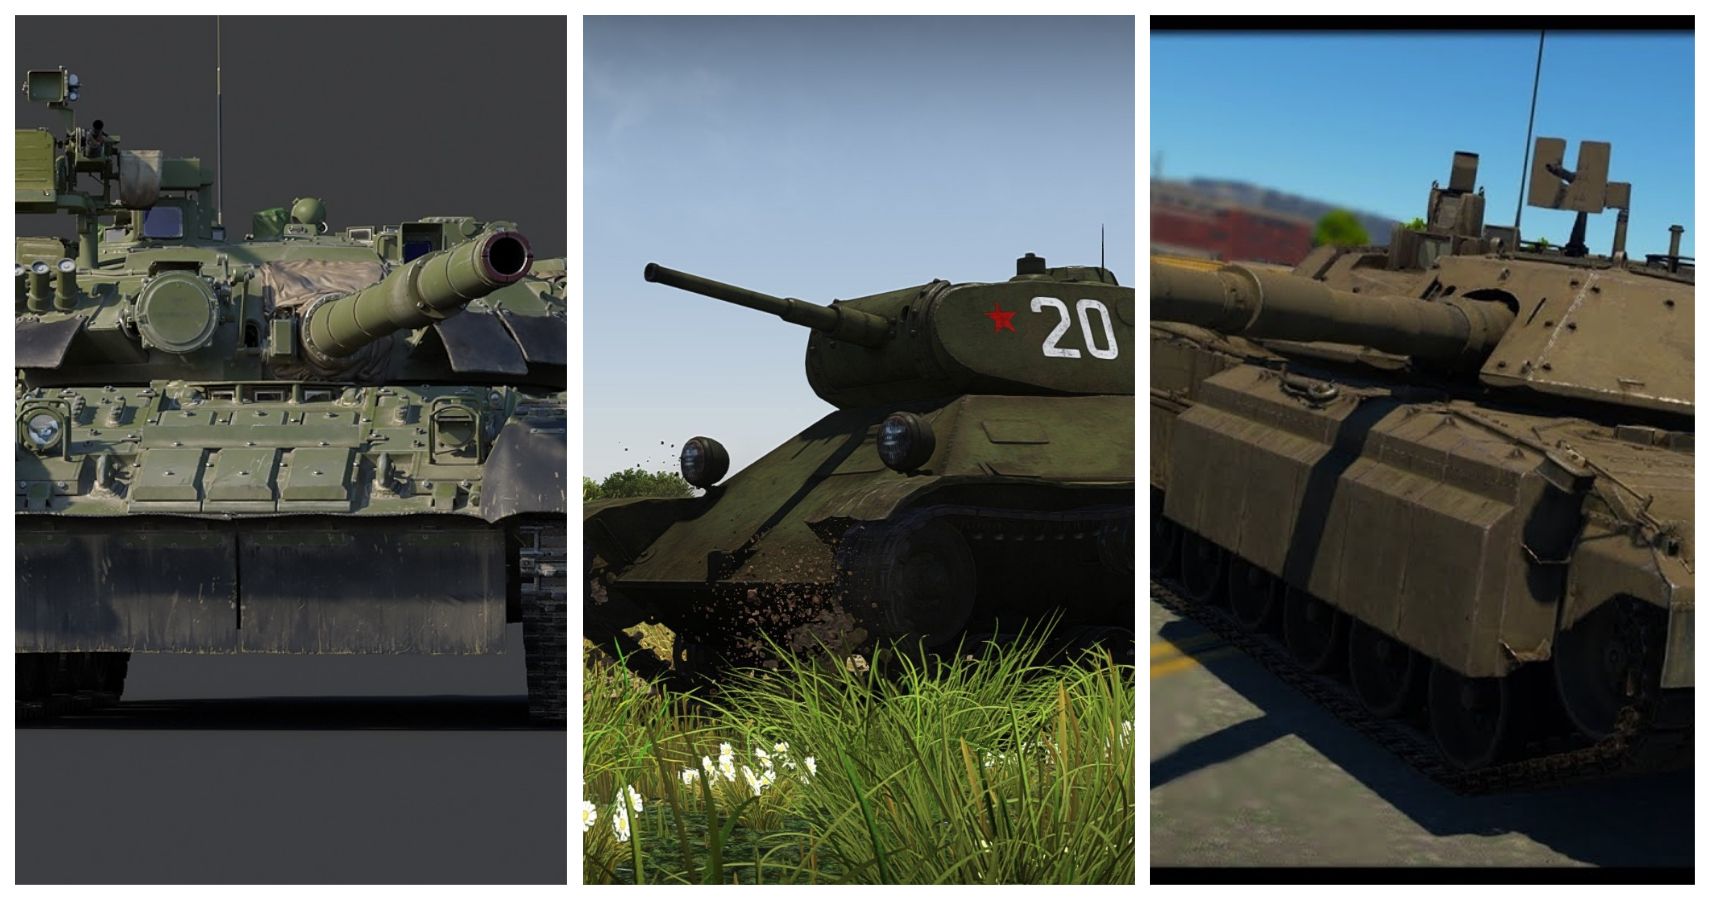 modern tanks war thunder